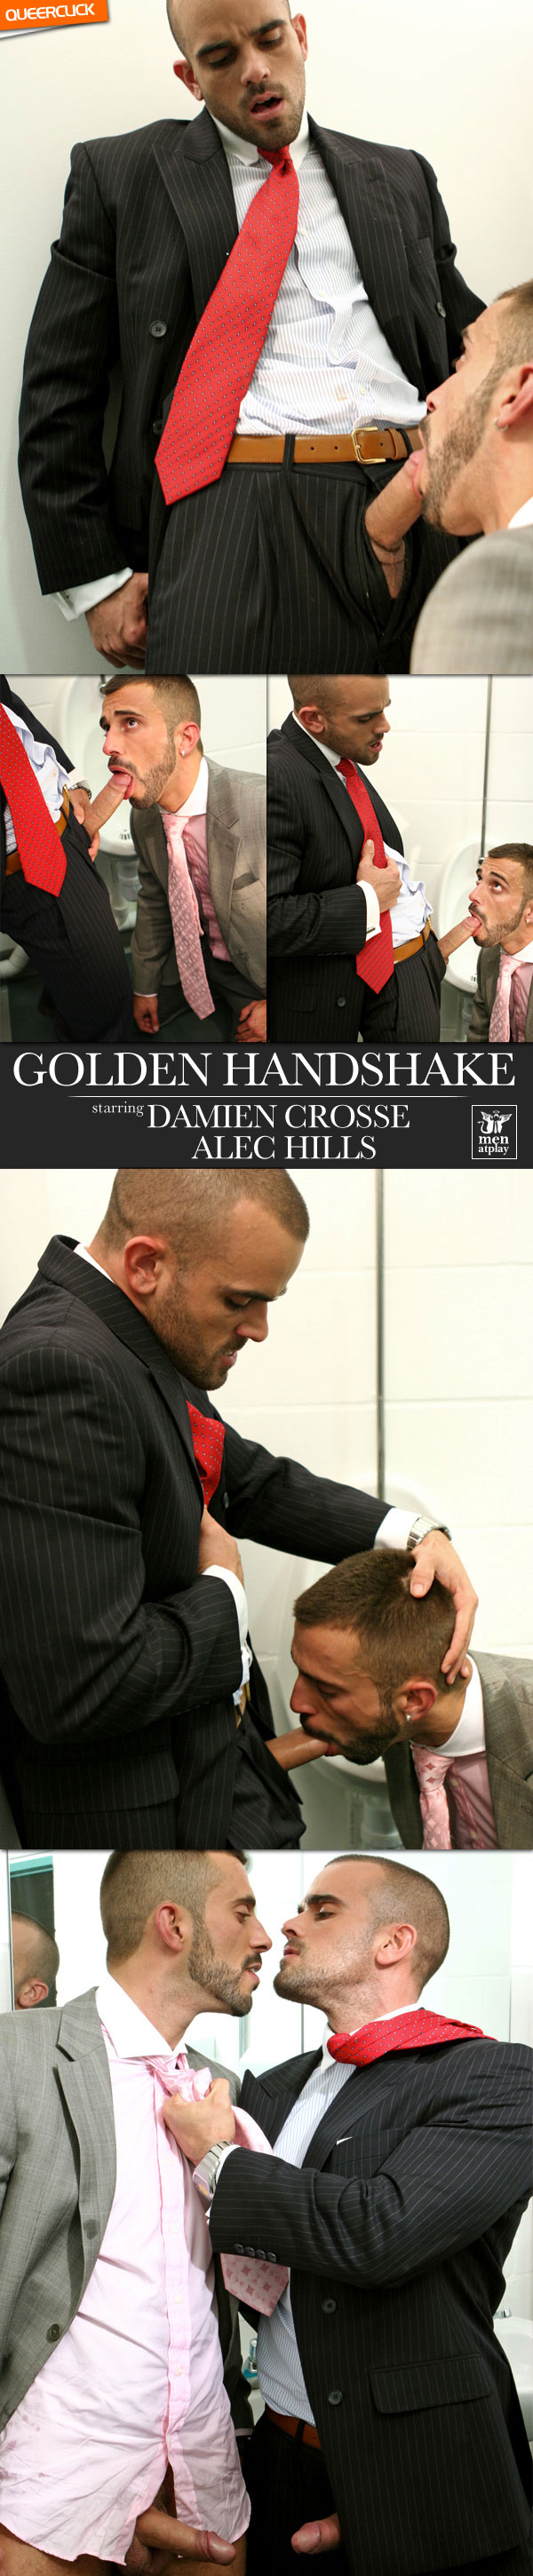 Men At Play: Golden Handshake - Damien Crosse and Alec Hills